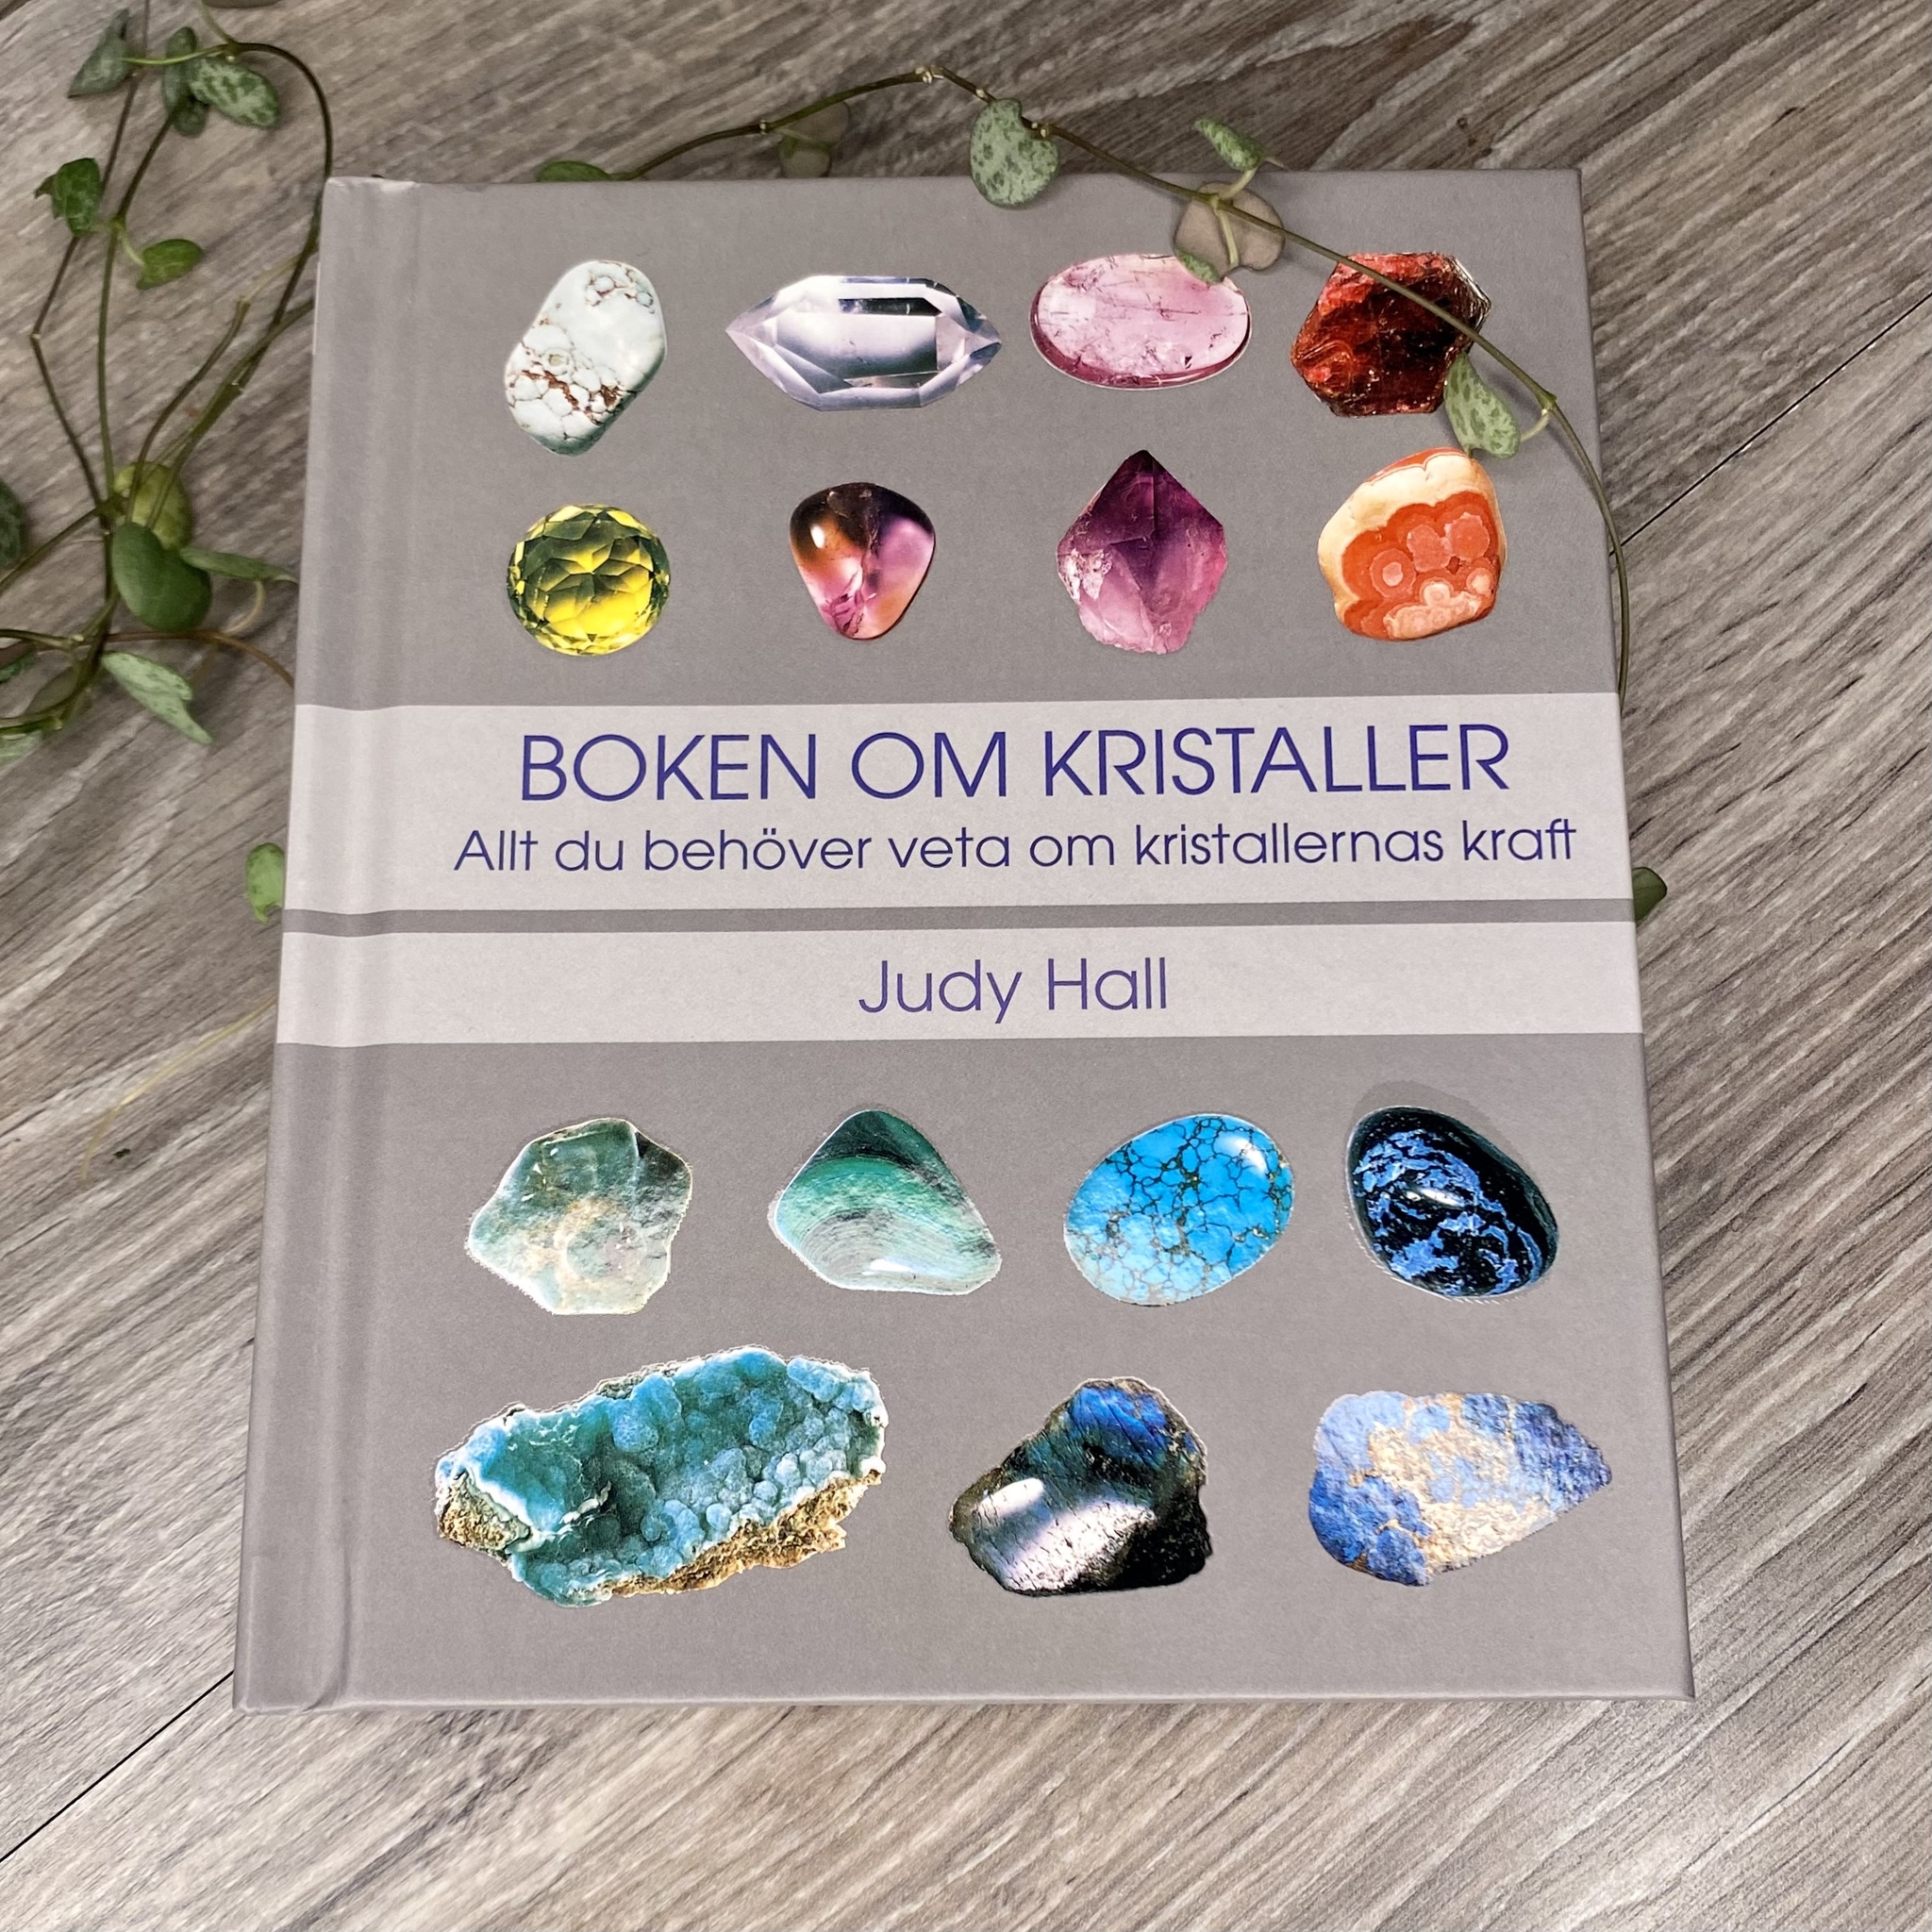 Boken om kristaller. Judy Hall